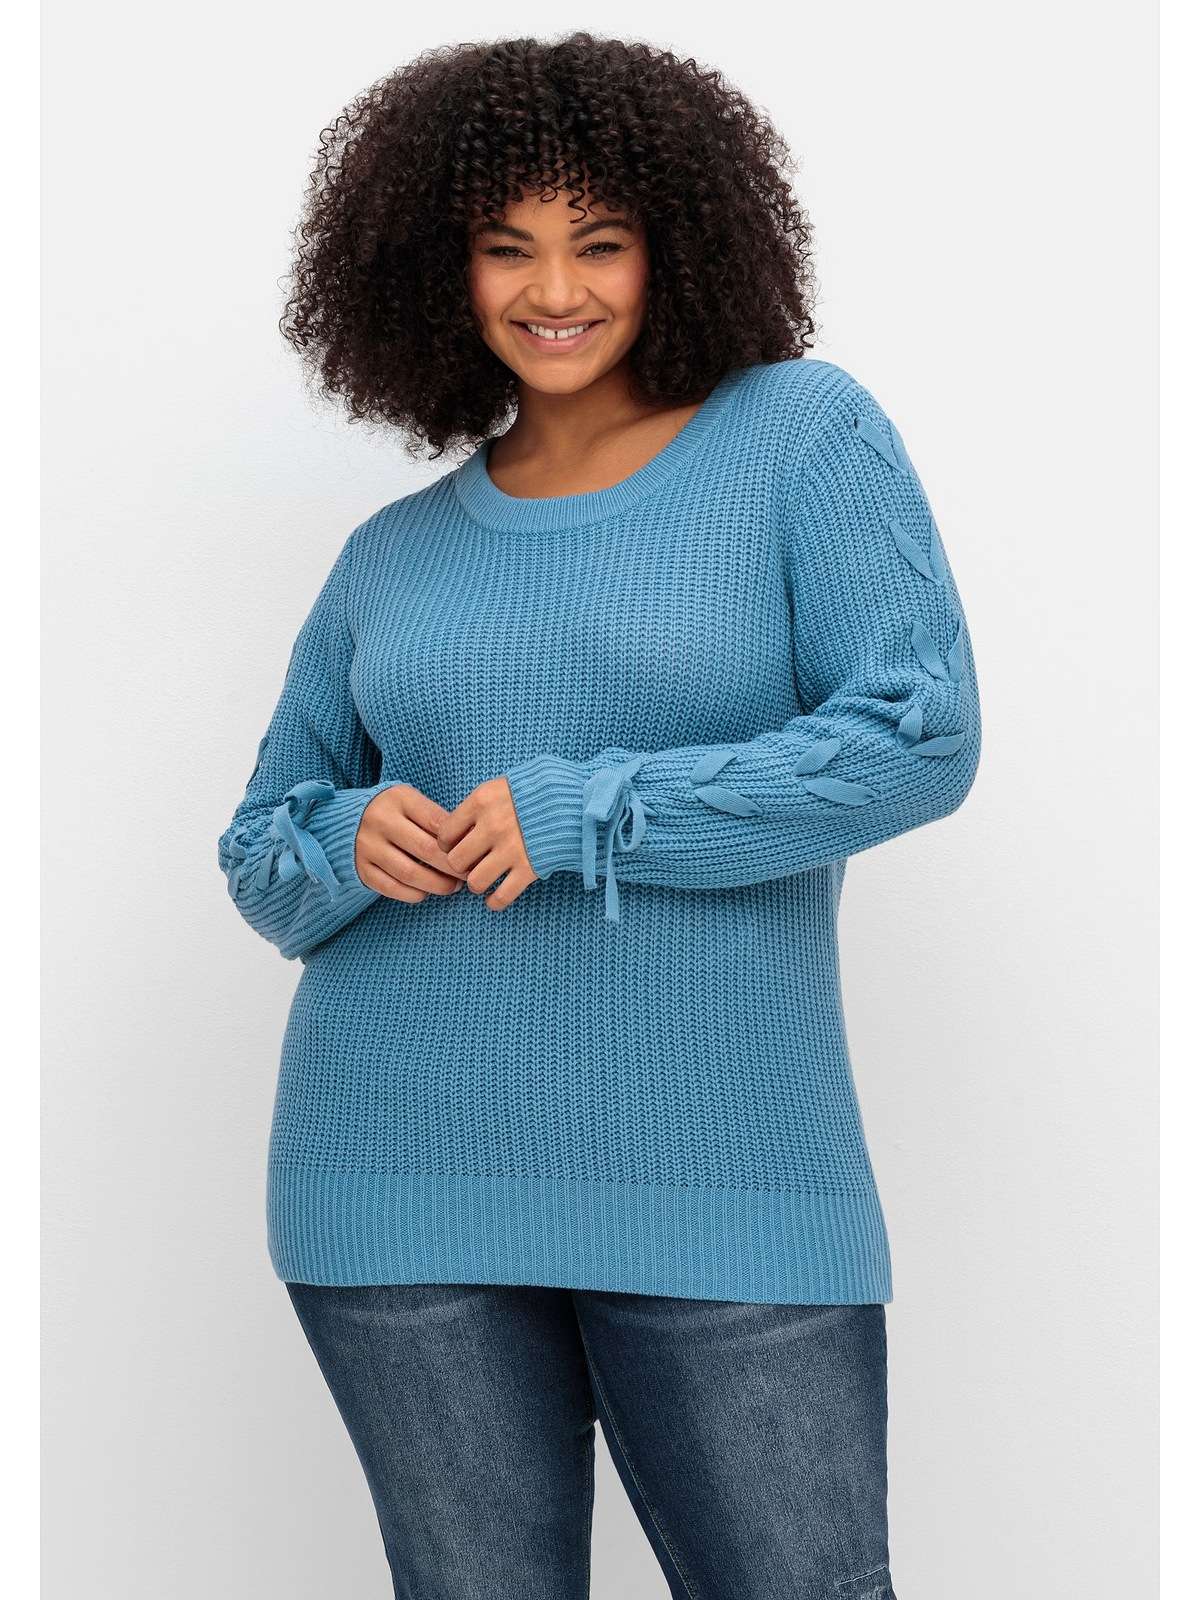 Вязаный свитер с плетеными лентами на рукавах.